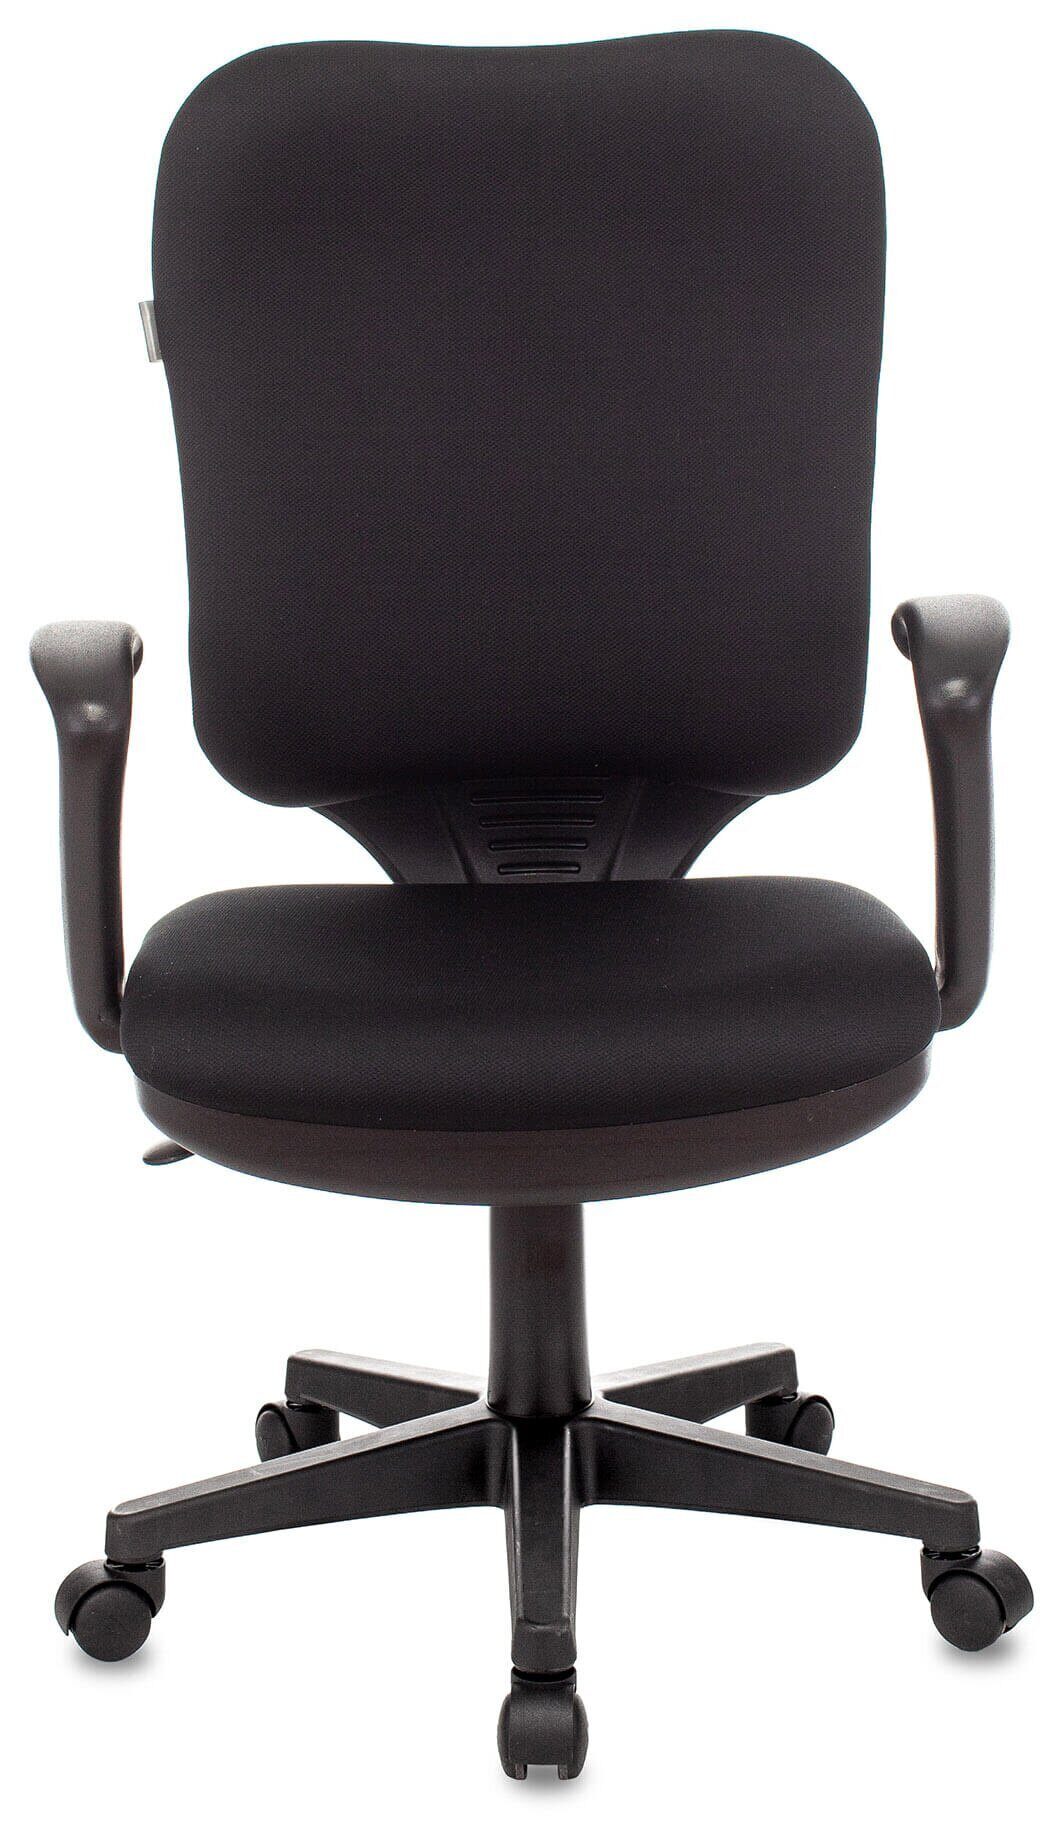 Кресло эргономичное CH-540 AXSN эргономичная спинка, черный